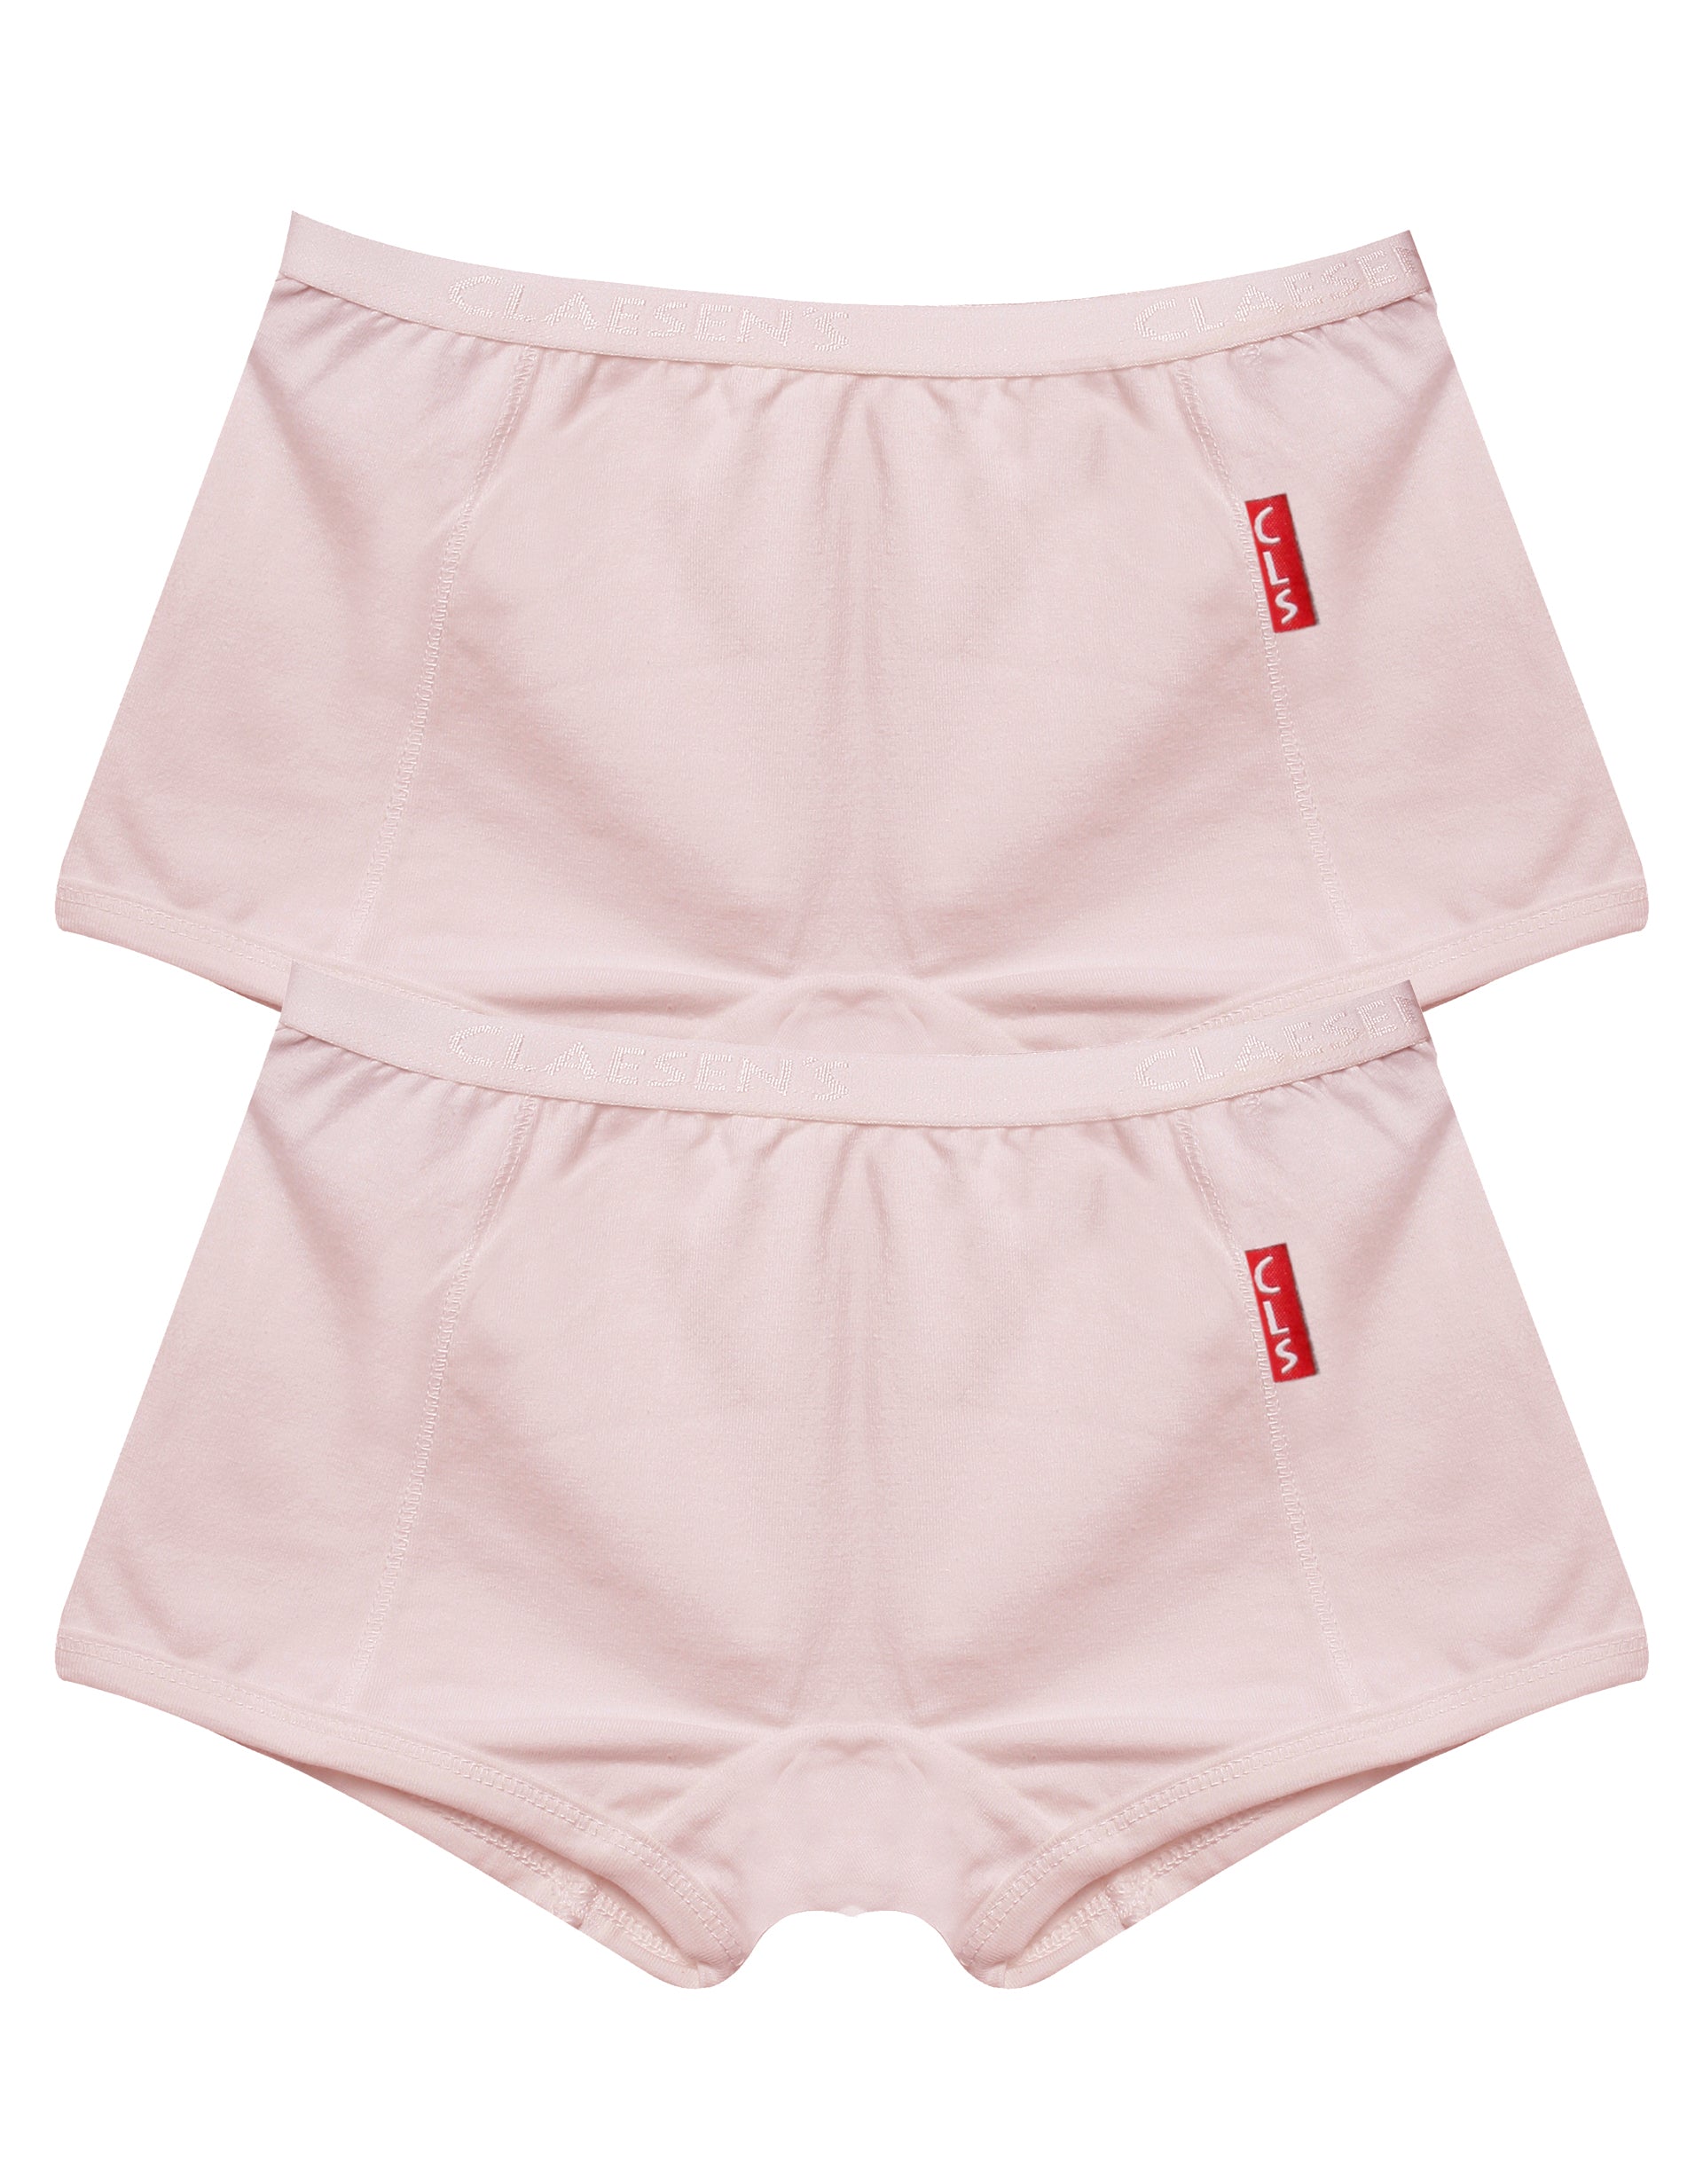 Meisjes Girls 2-pack Boxer van Claesen's in de kleur Pink in maat 152.